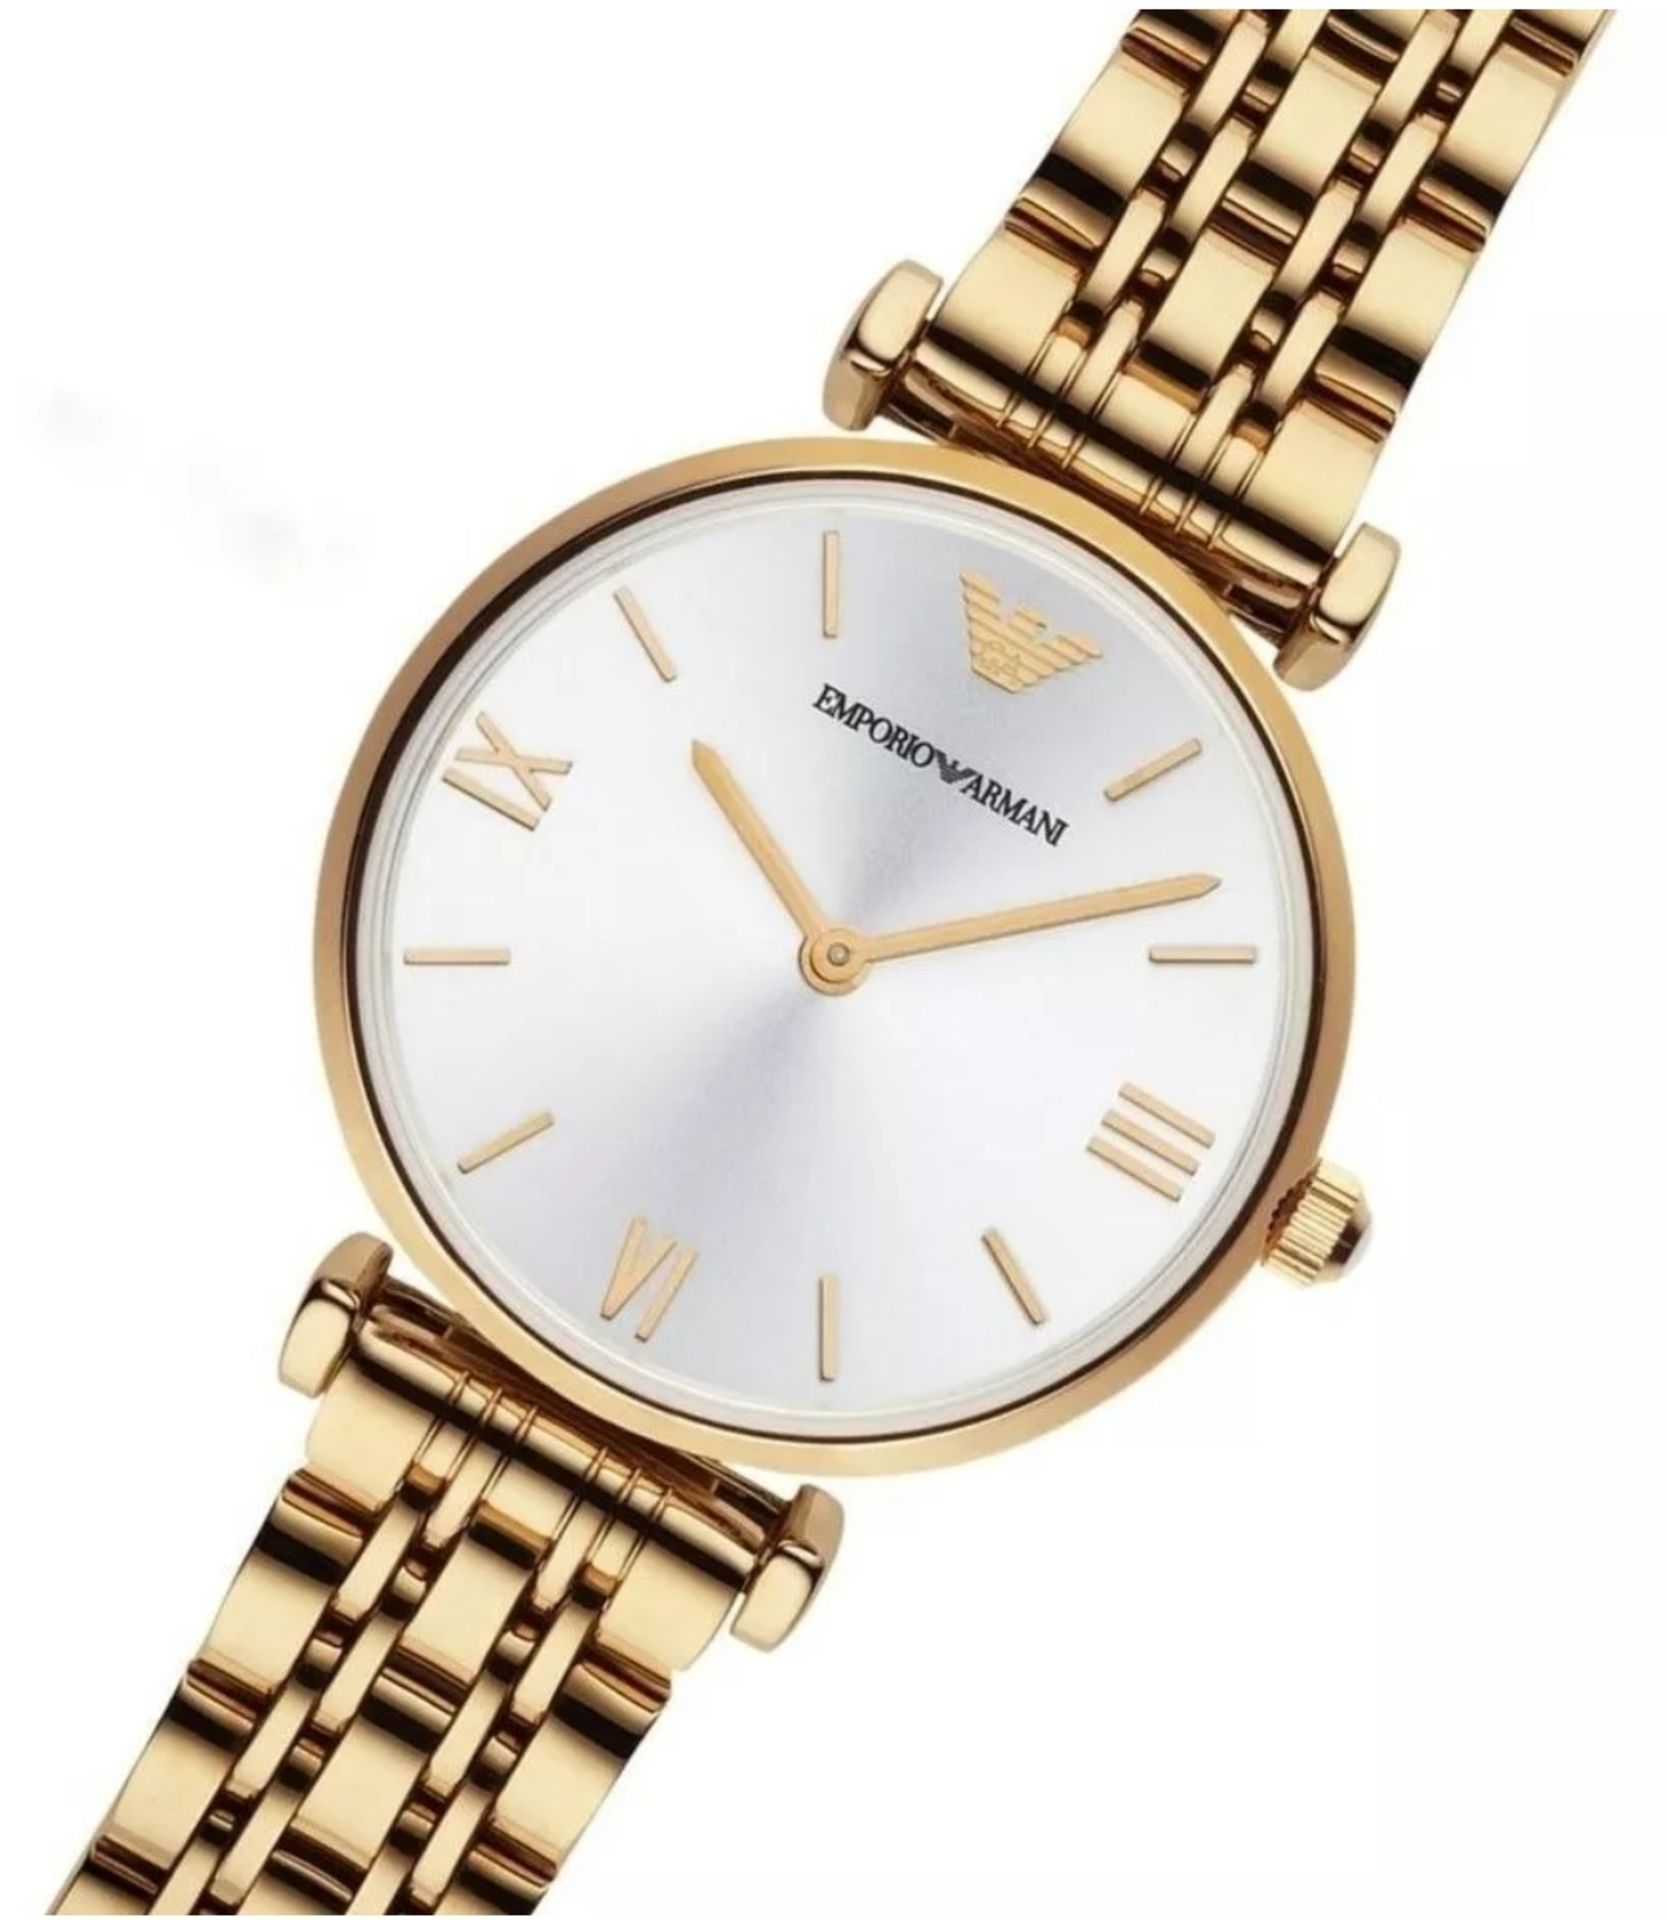 Emporio Armani AR1877 Ladies Gianni T-Bar Gold Tone Bracelet Designer Quartz Watch - Image 2 of 8